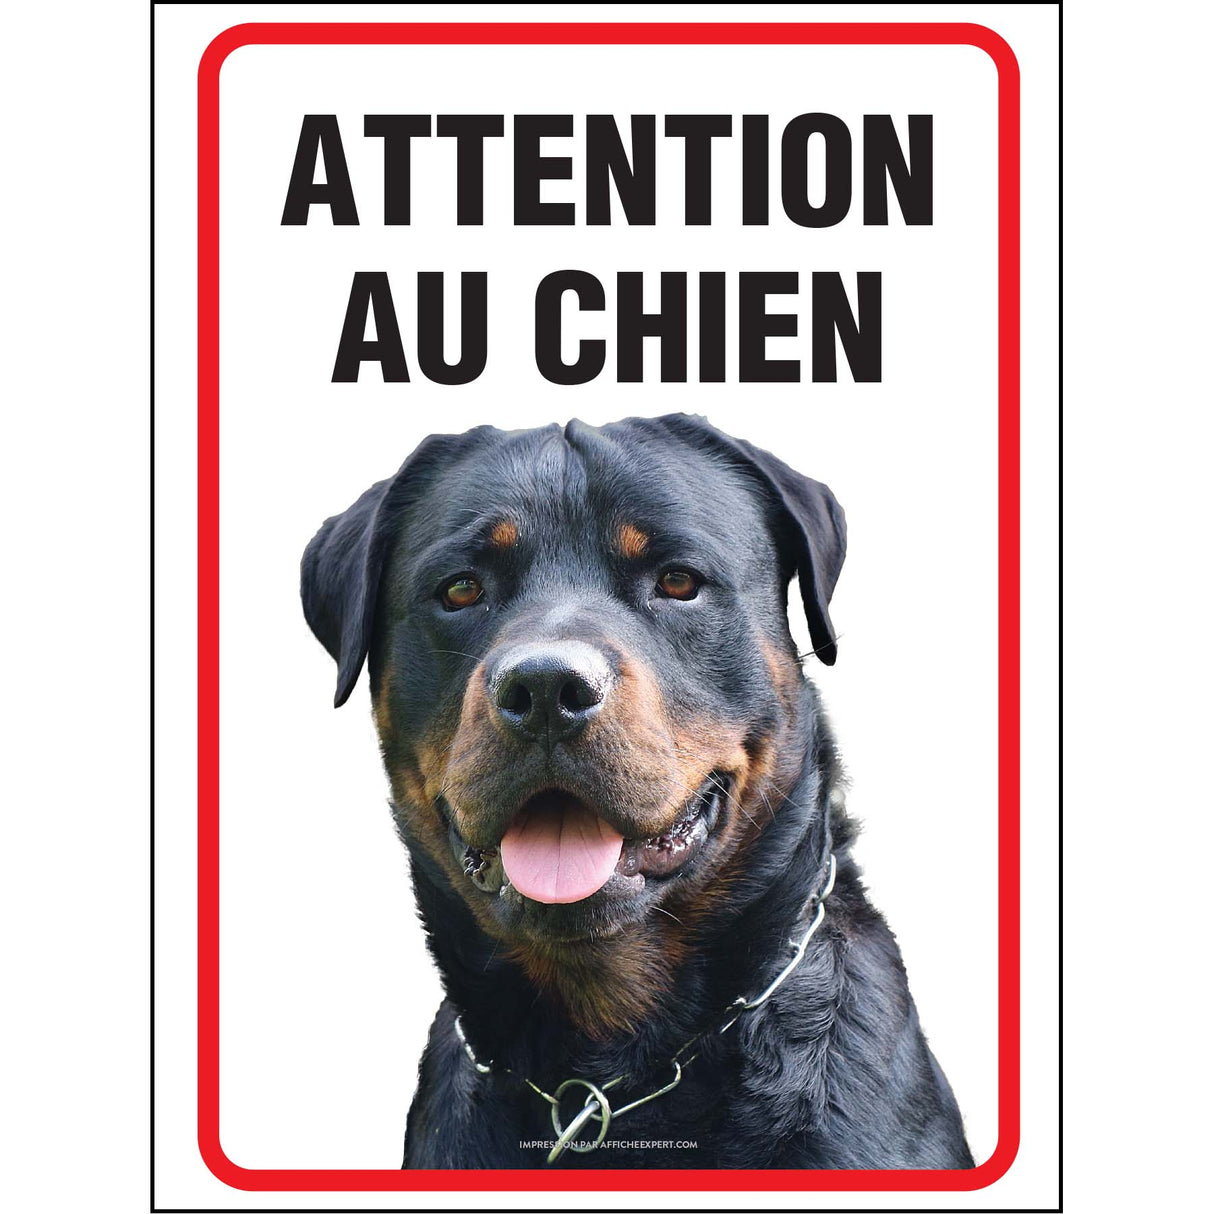 Attention au chien - Rottweiler